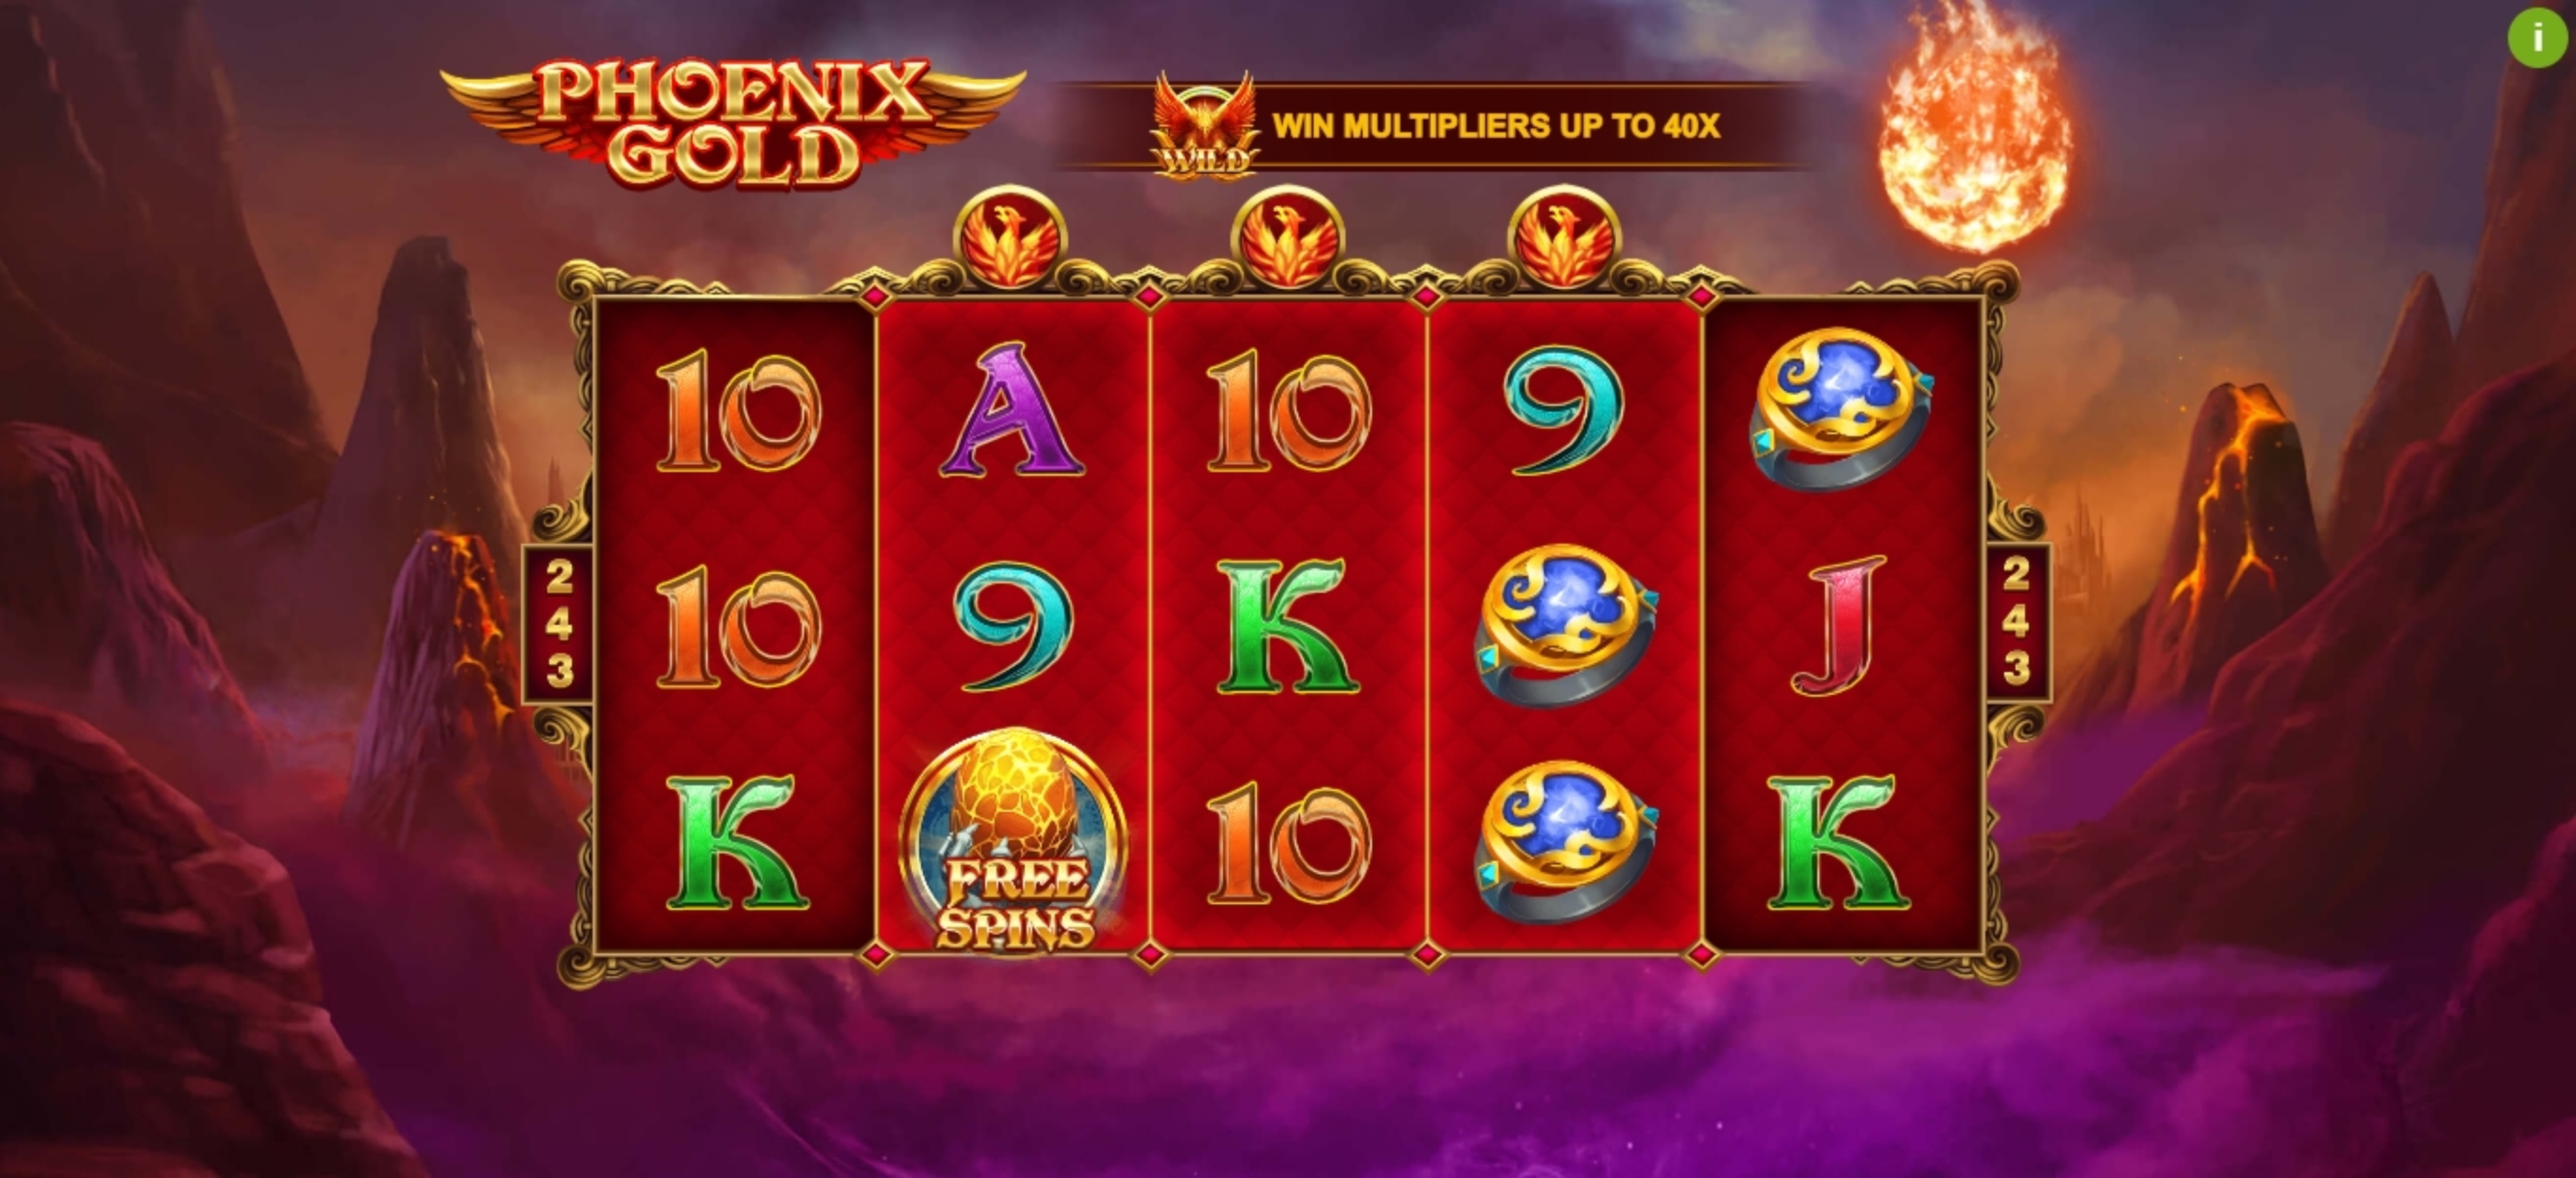 Reels in Phoenix Gold Slot Game by PariPlay